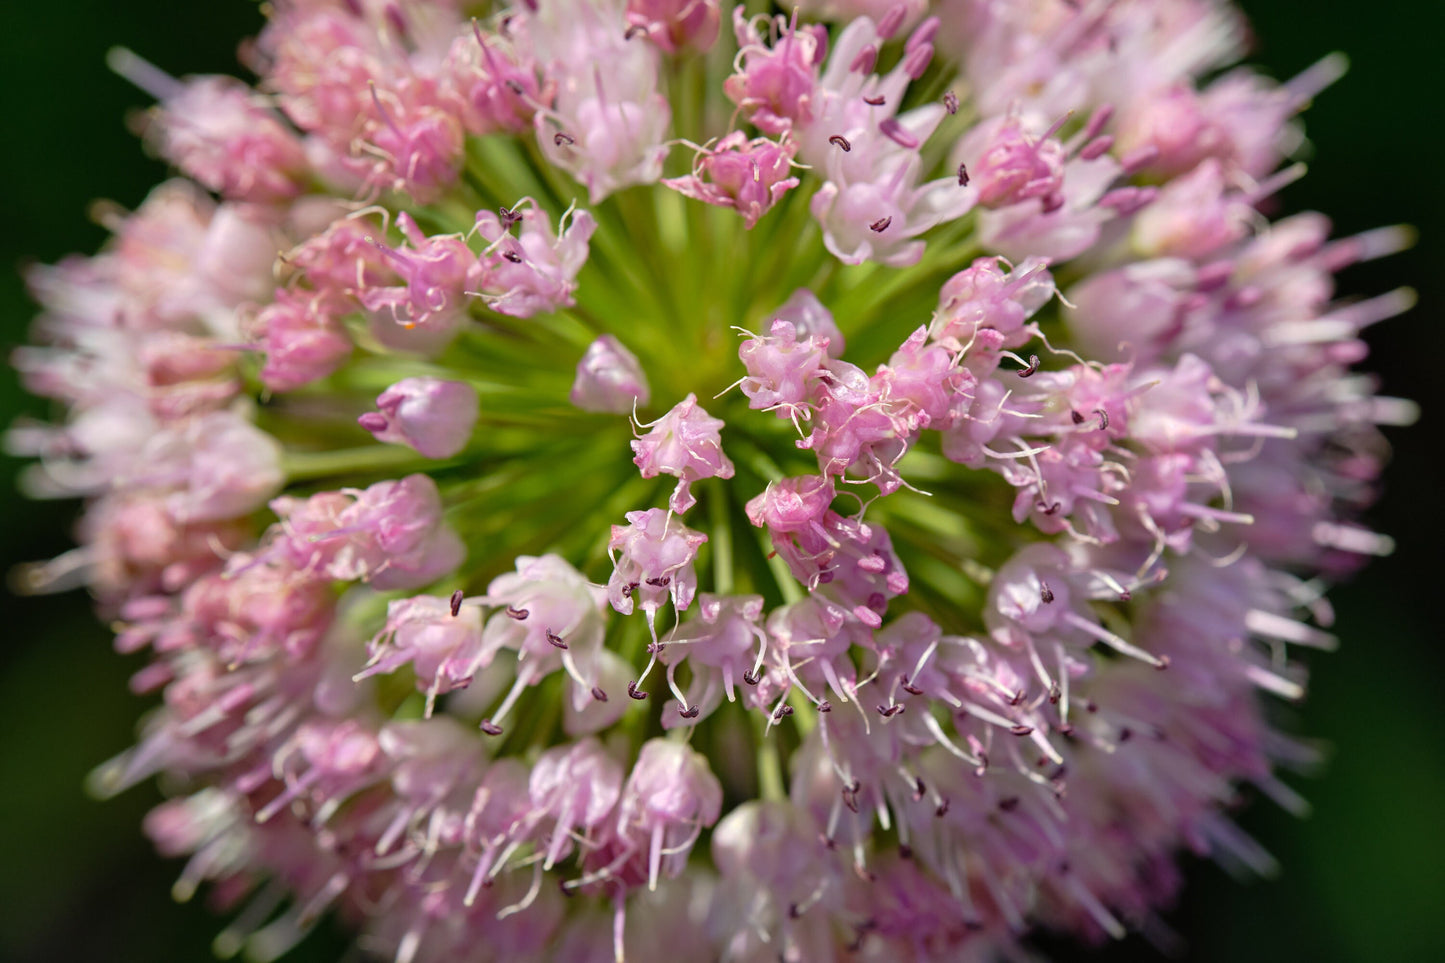 10 MOUSE GARLIC Allium Angulosum Wild Garlic Pink Flower Herb Seeds